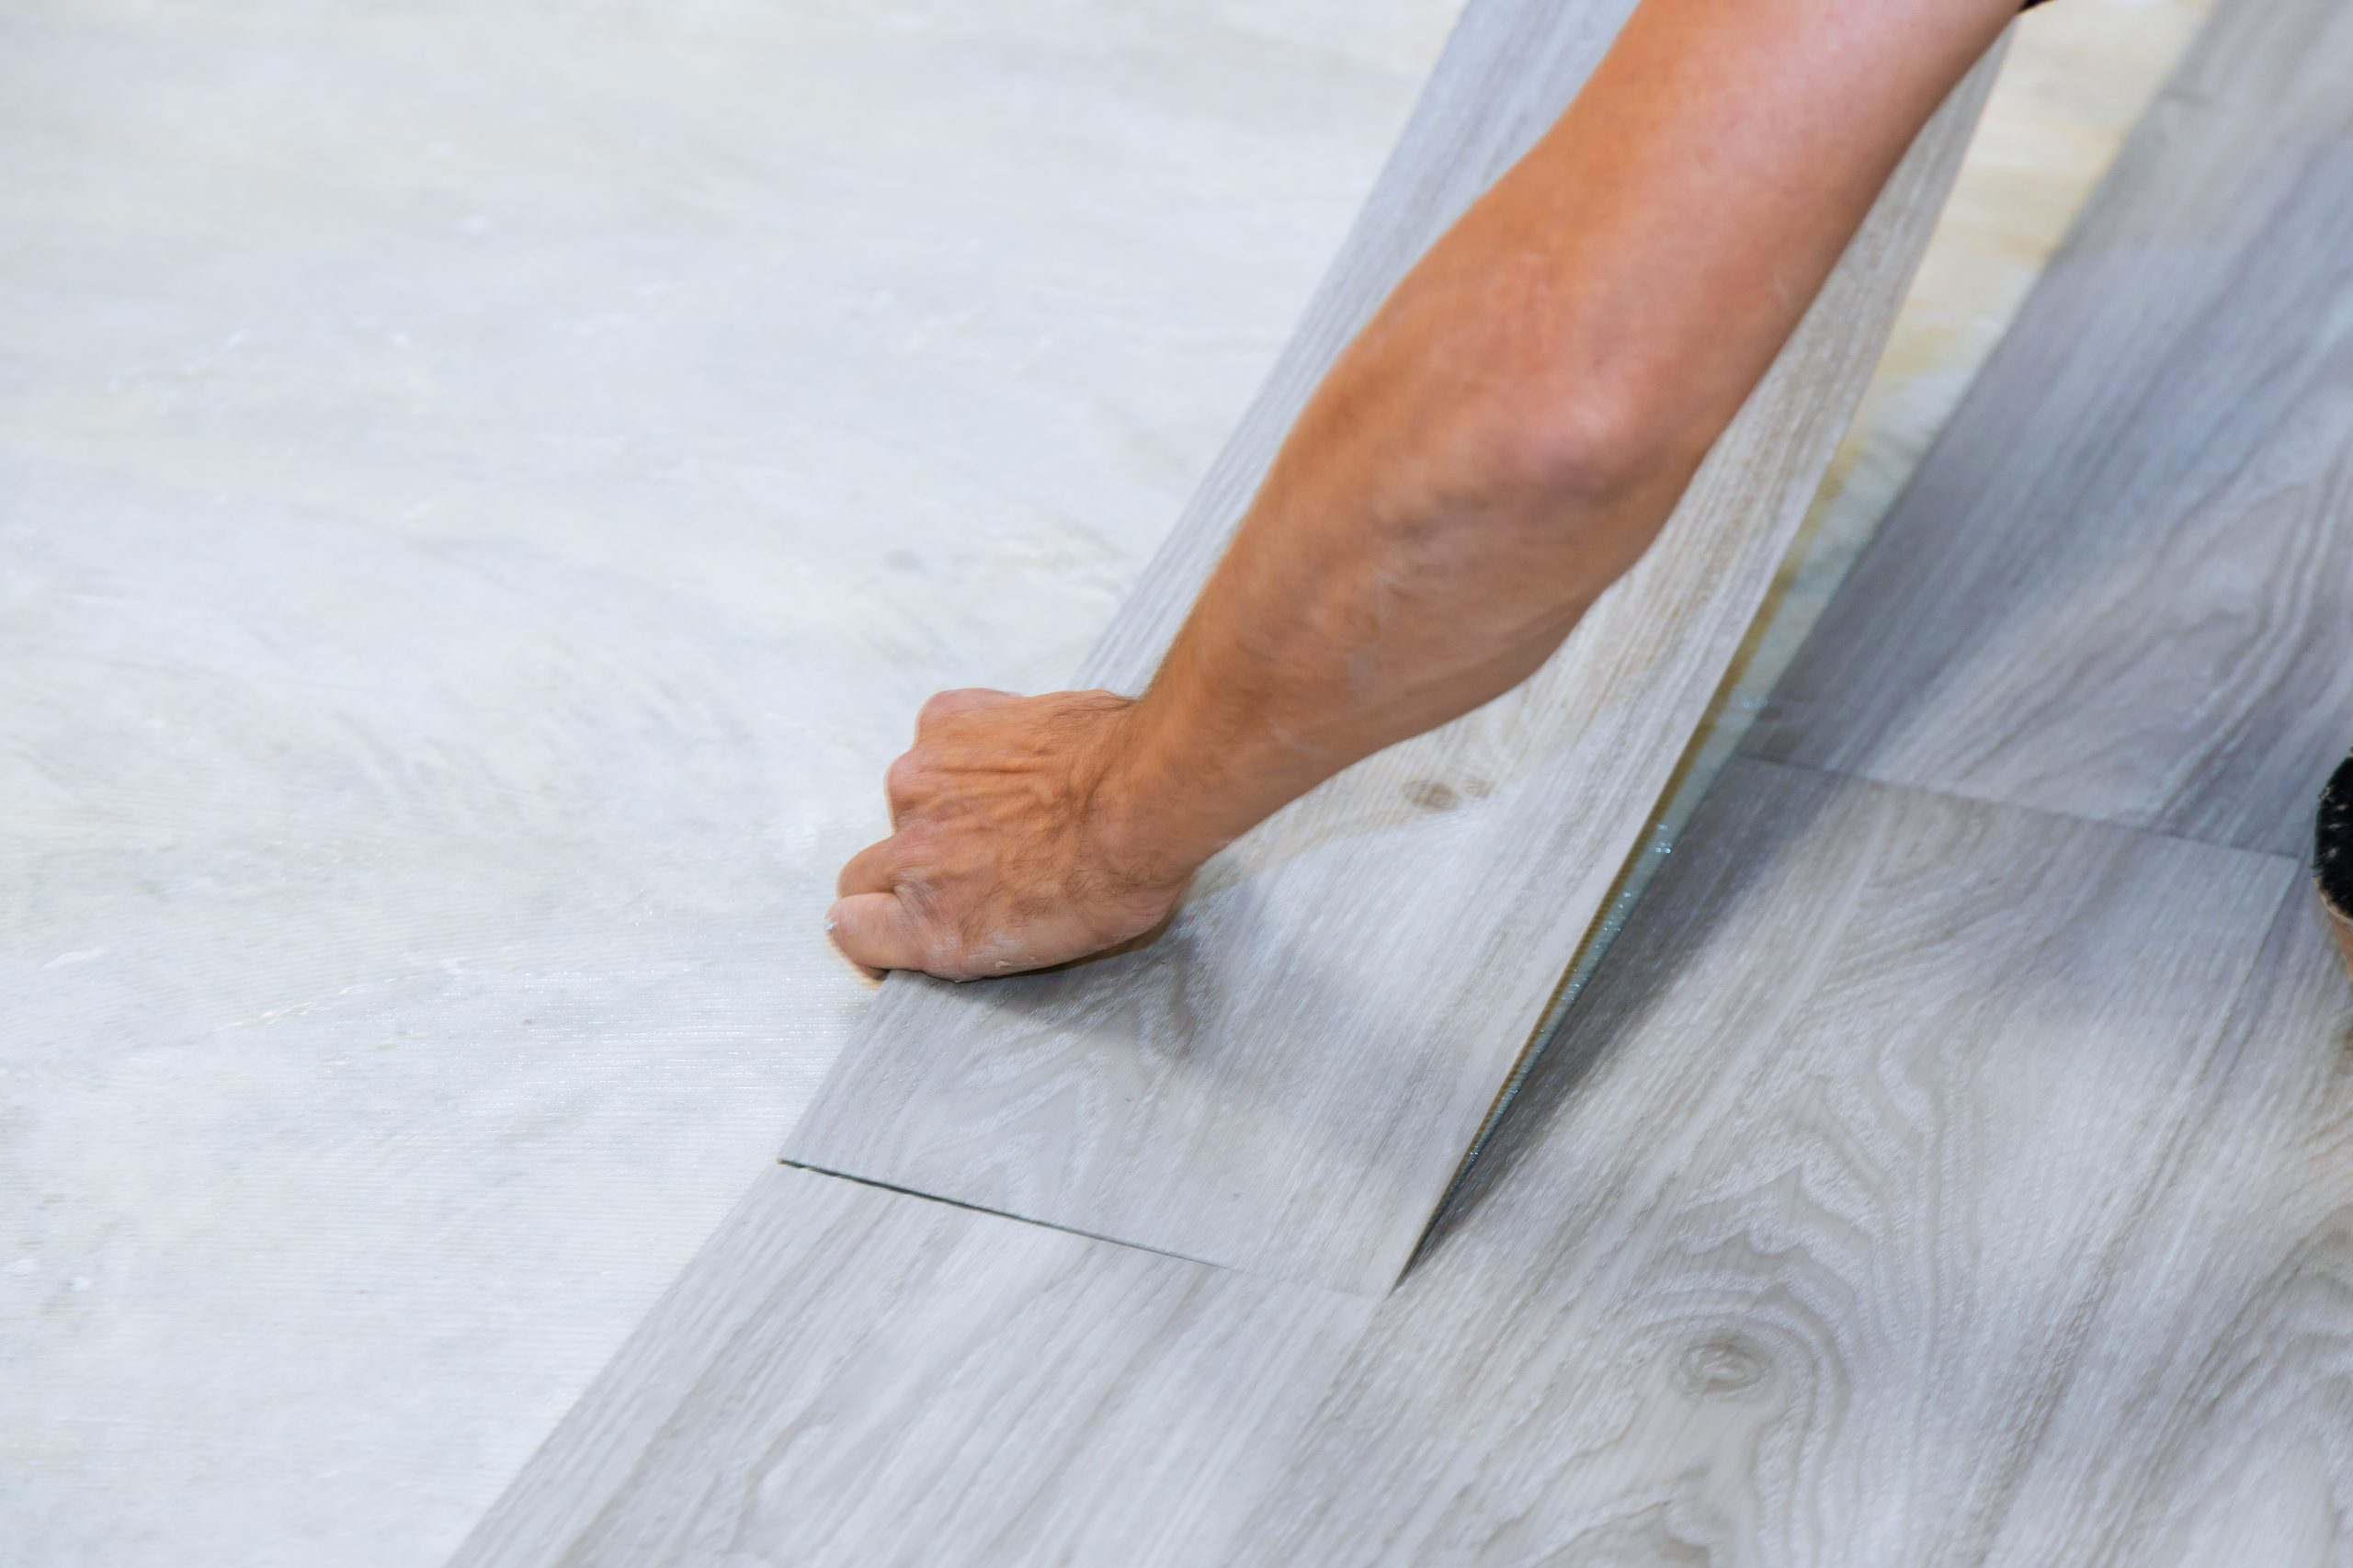 Worker installing new vinyl tile floor laminate wood texture floor with new home improvement